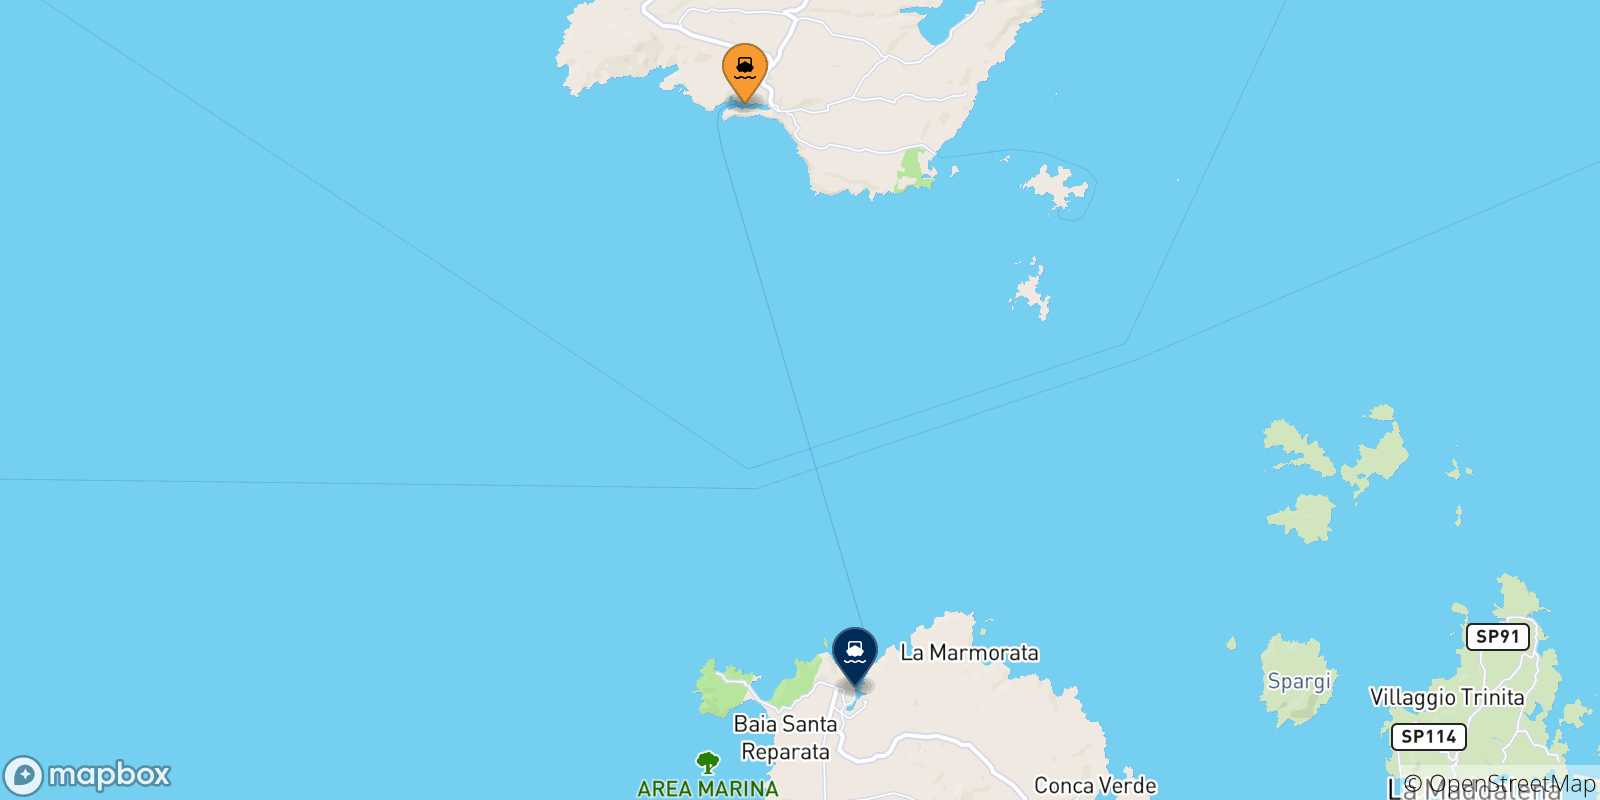 Mappa delle possibili rotte tra Bonifacio e la Sardegna